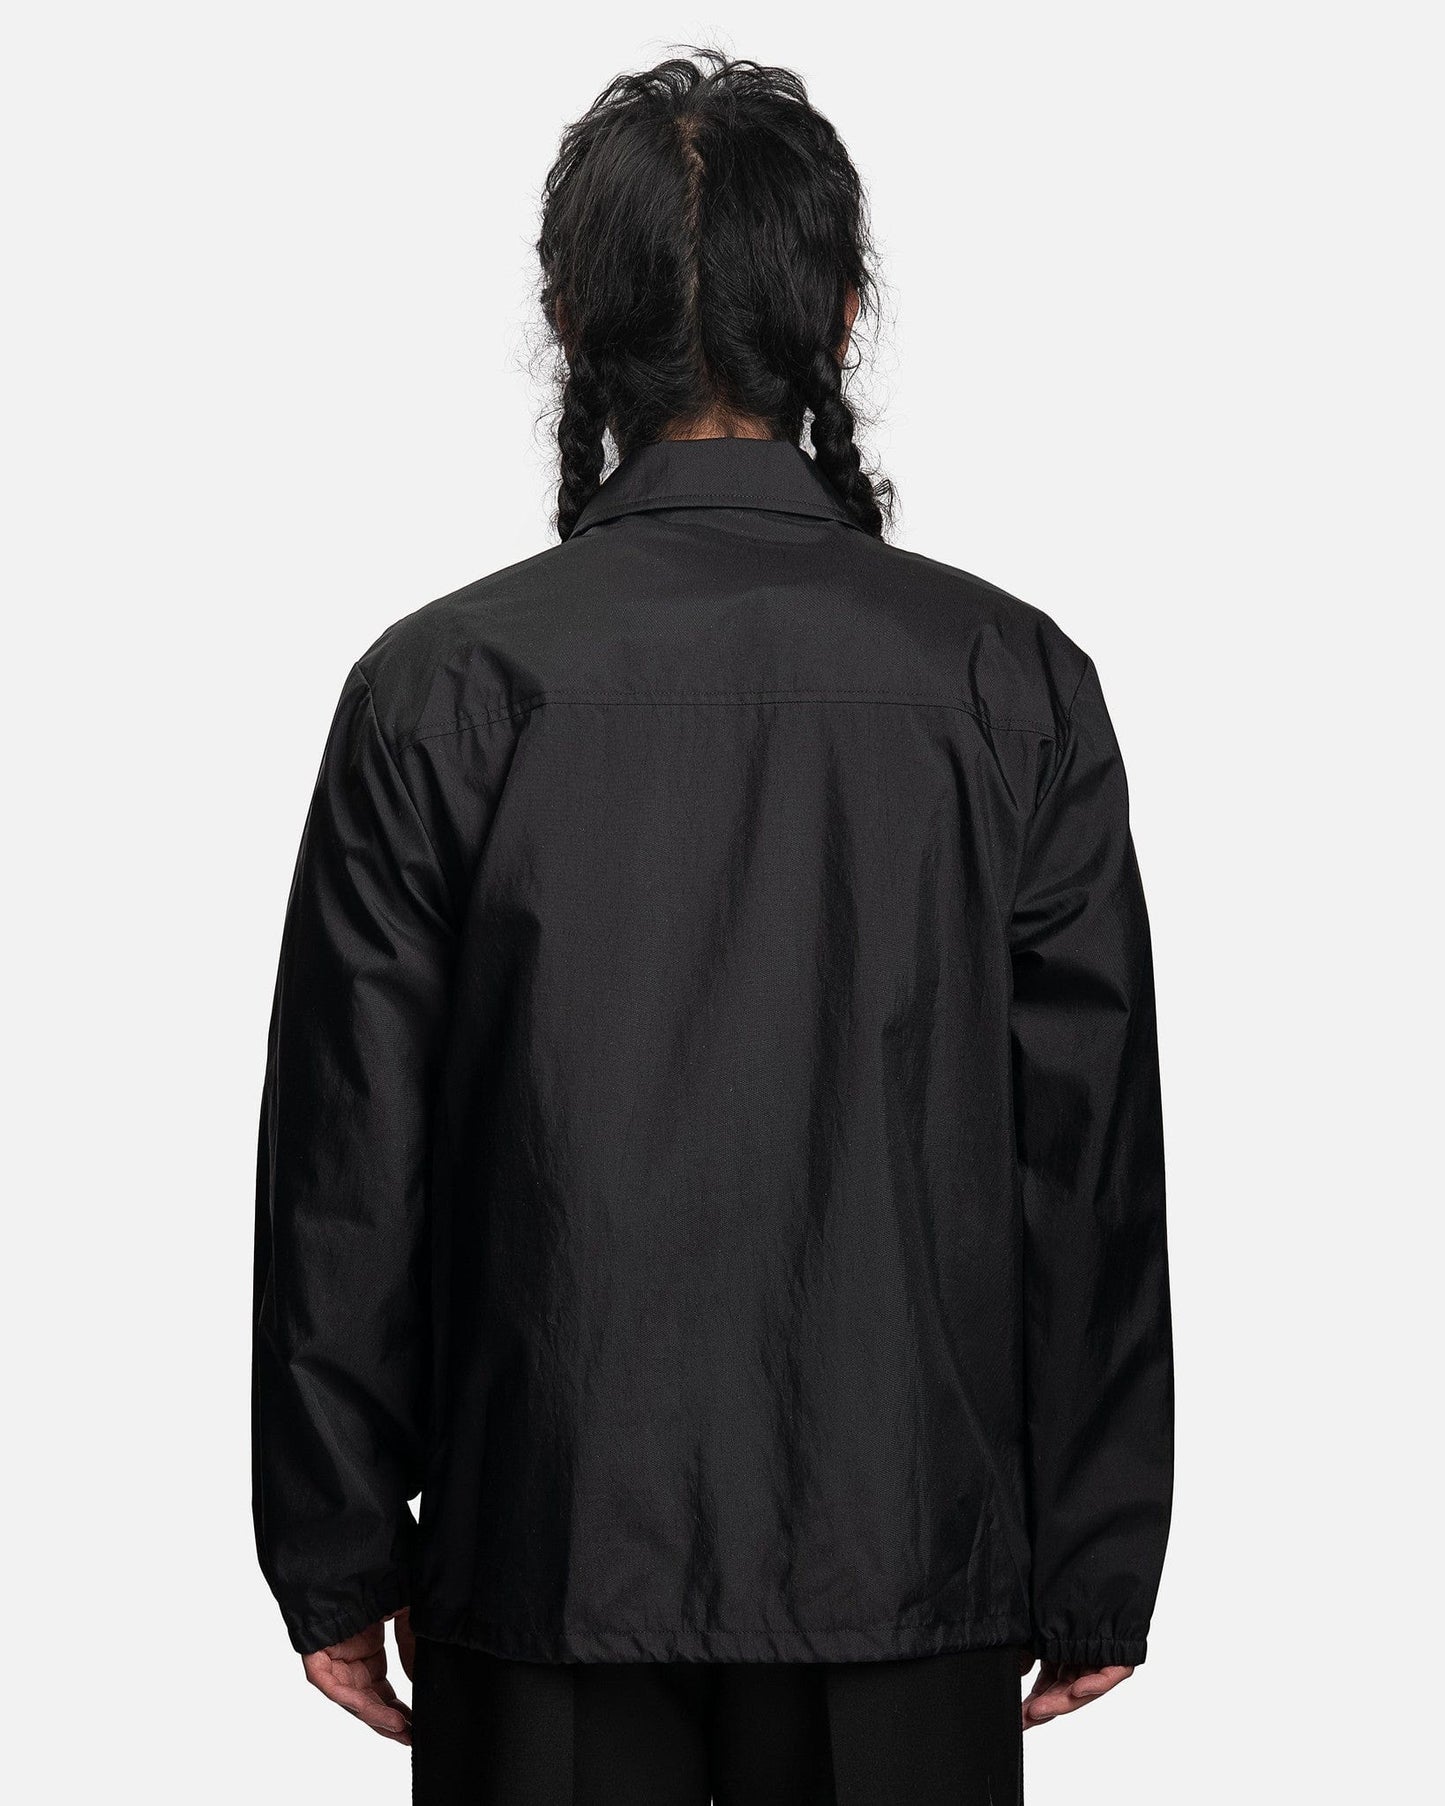 Dries Van Noten Men's Jackets Vorrie Jacket in Black